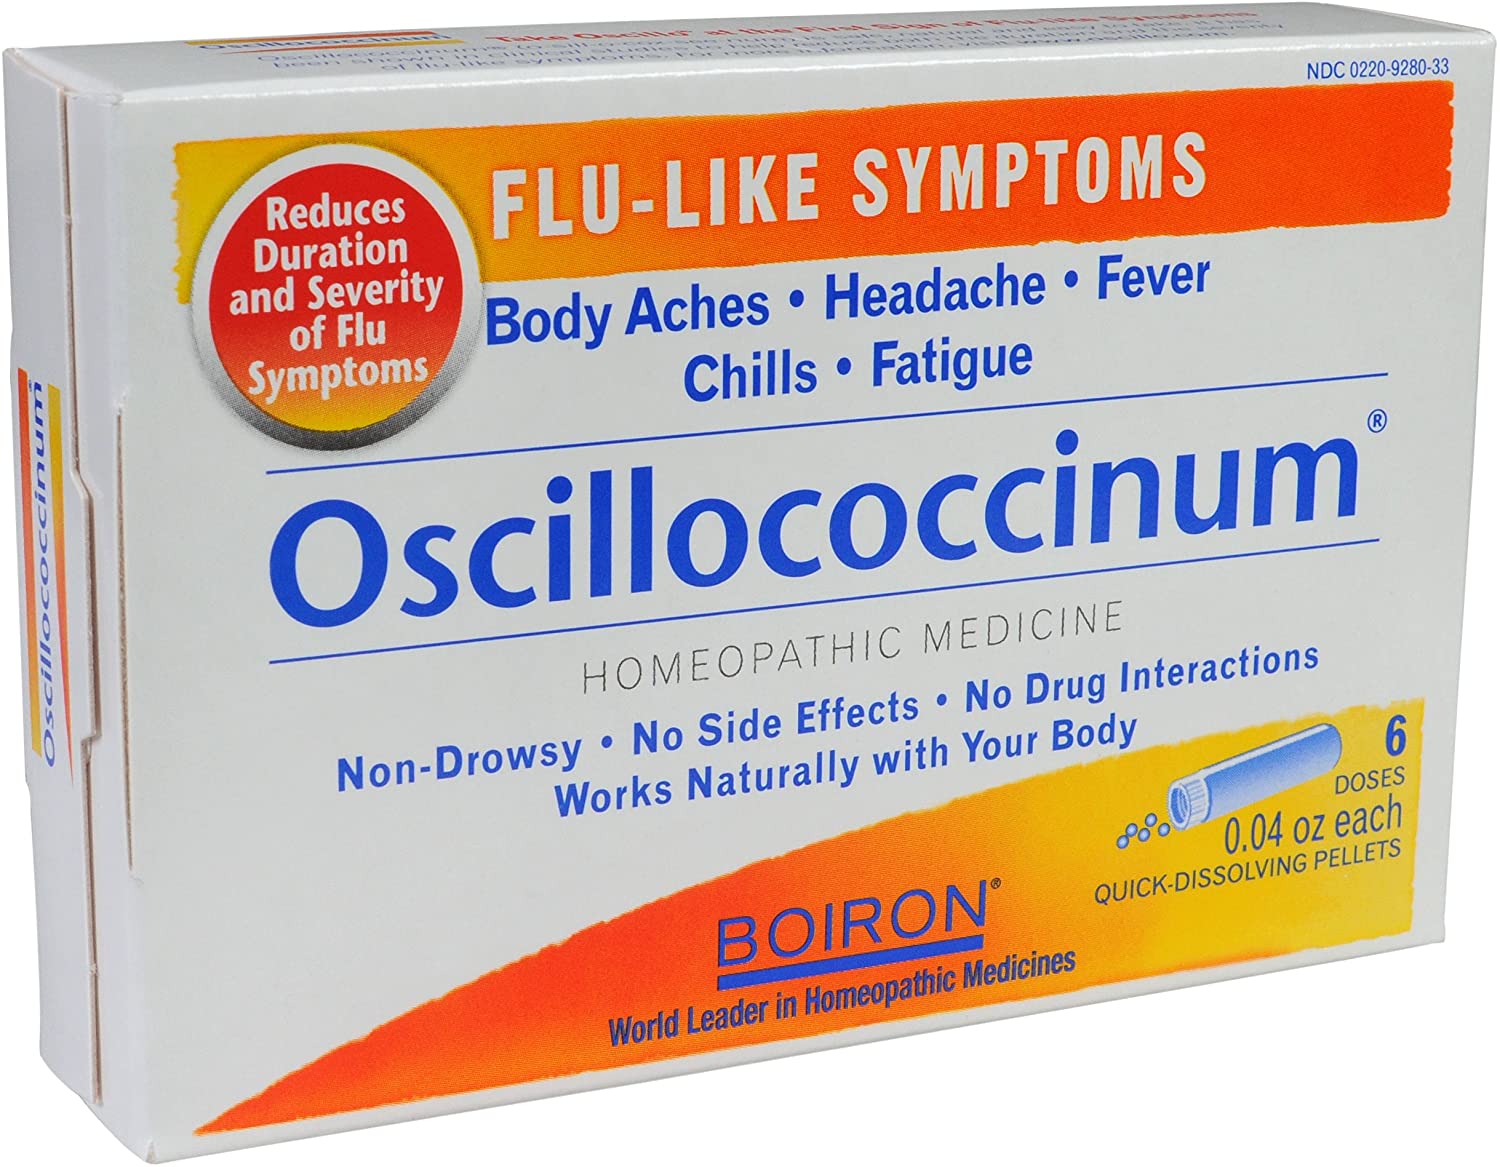 oscillococcinum یکی از پر فروش ترین دارو ها بعد از سال 2005 در اروپا و آمریکا برای درمان سرماخوردگی و آنفلوآنزا